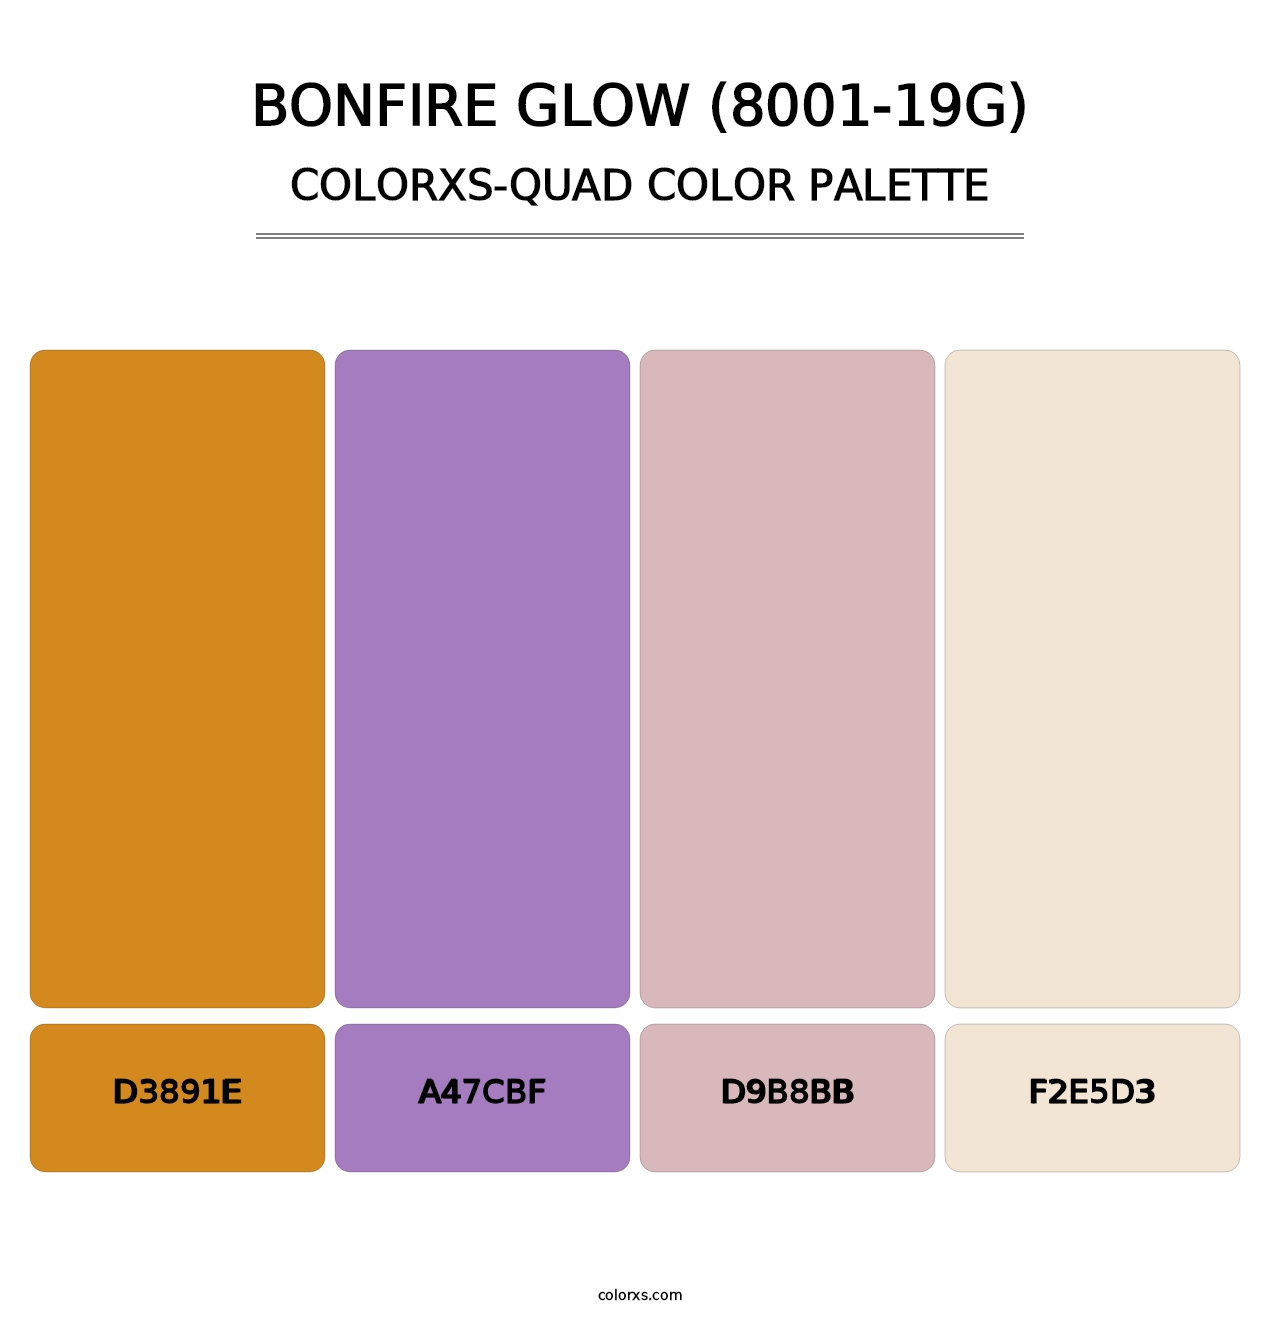 Bonfire Glow (8001-19G) - Colorxs Quad Palette